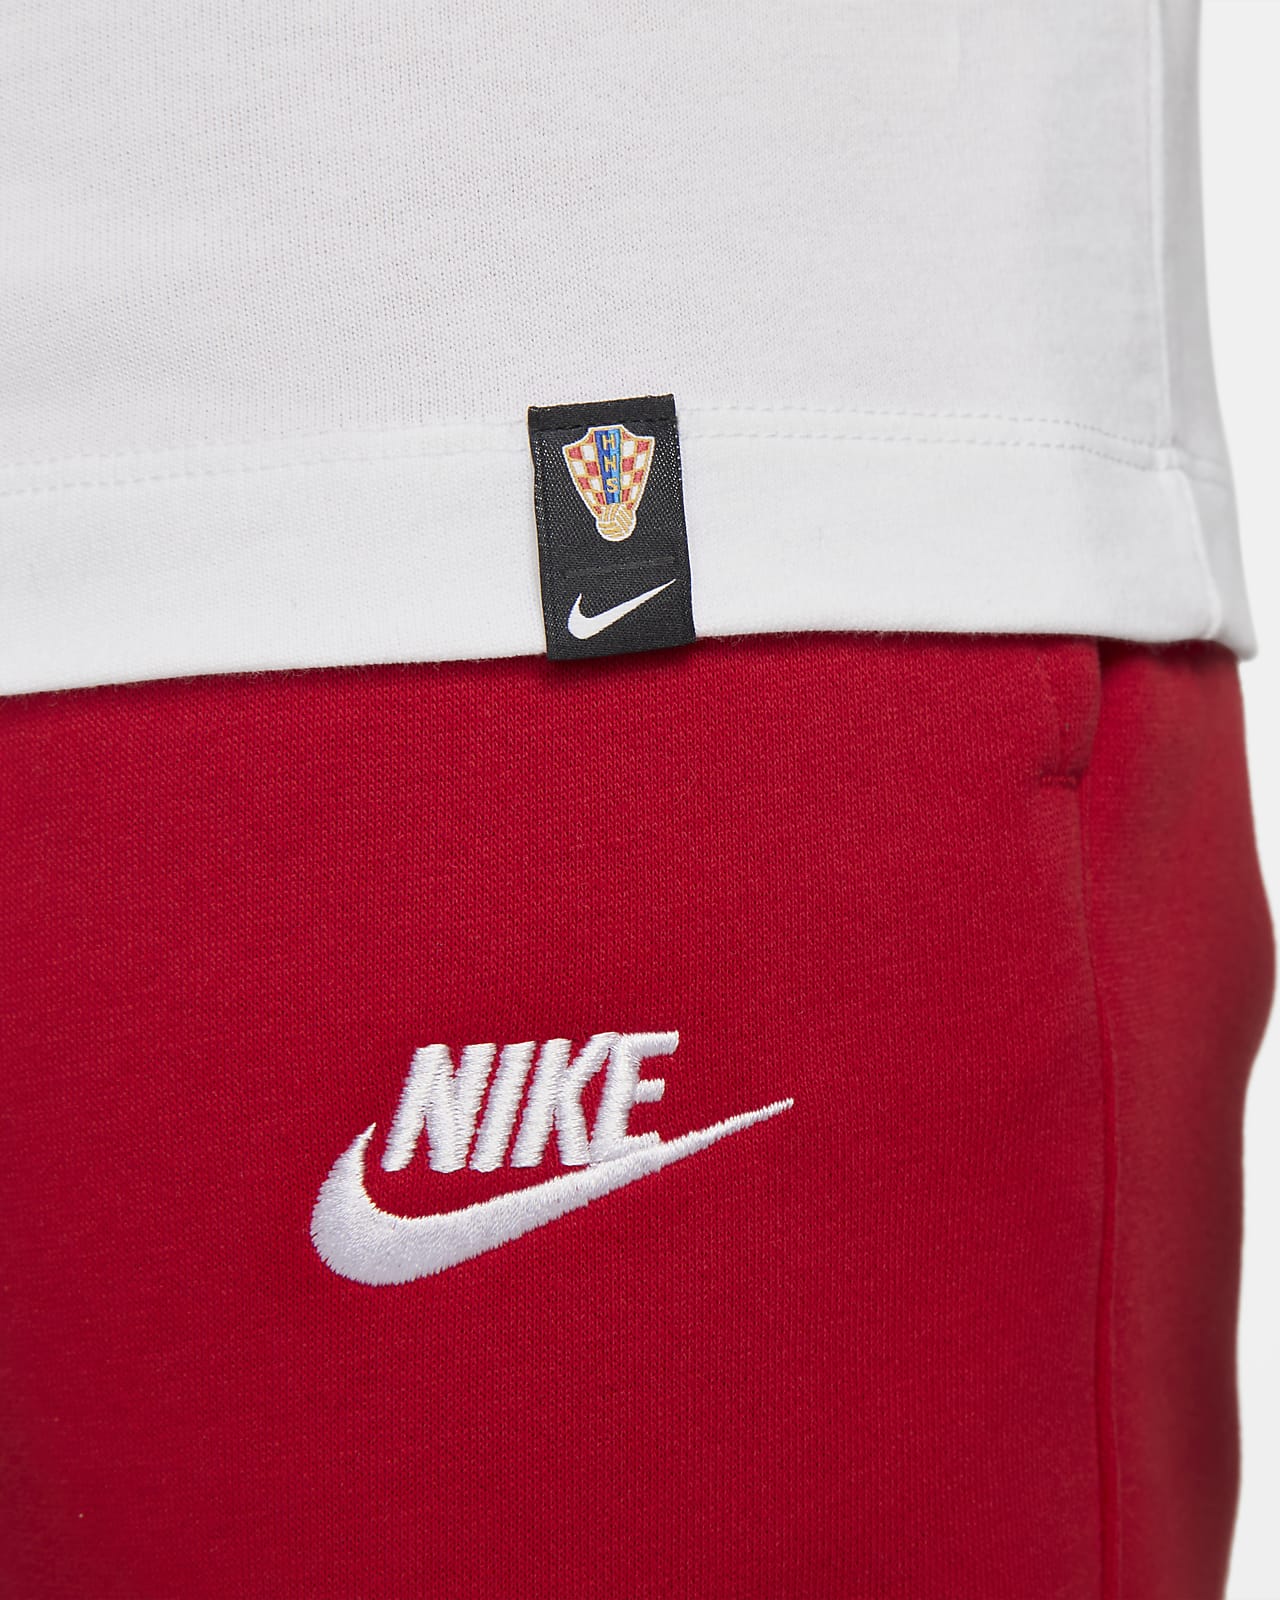 Croatia Men's Football T-Shirt. Nike AE